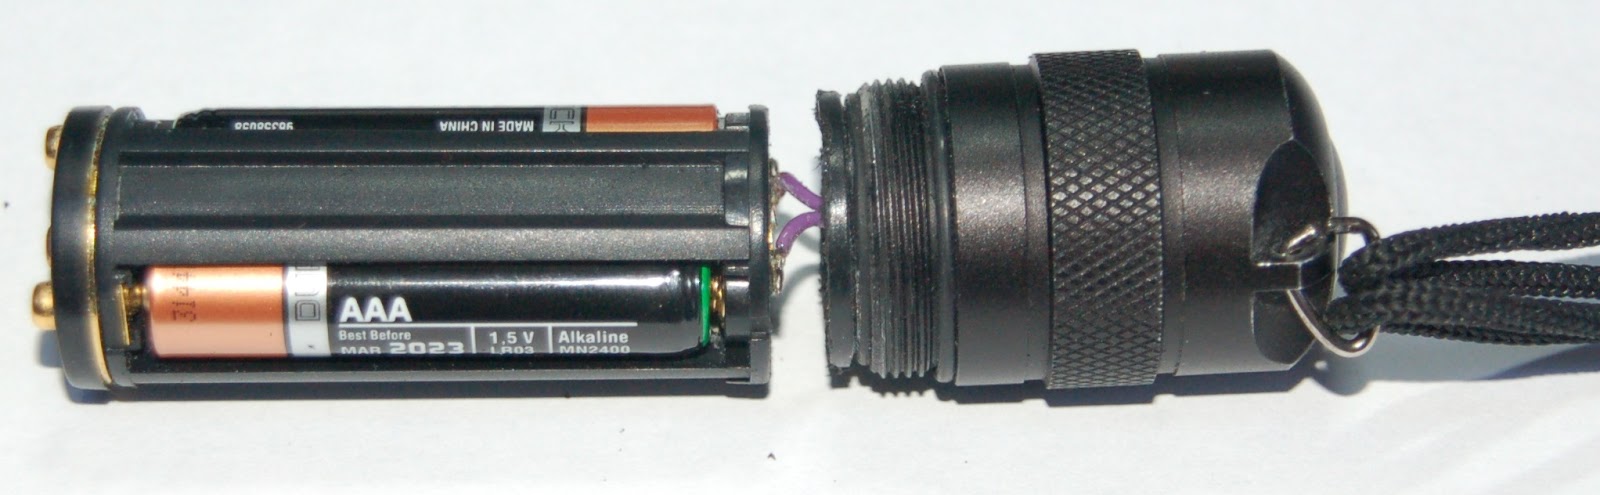 meteor Tragisk gaben Eamonn's Ramblings: Repair of an LED Lenser flashlight